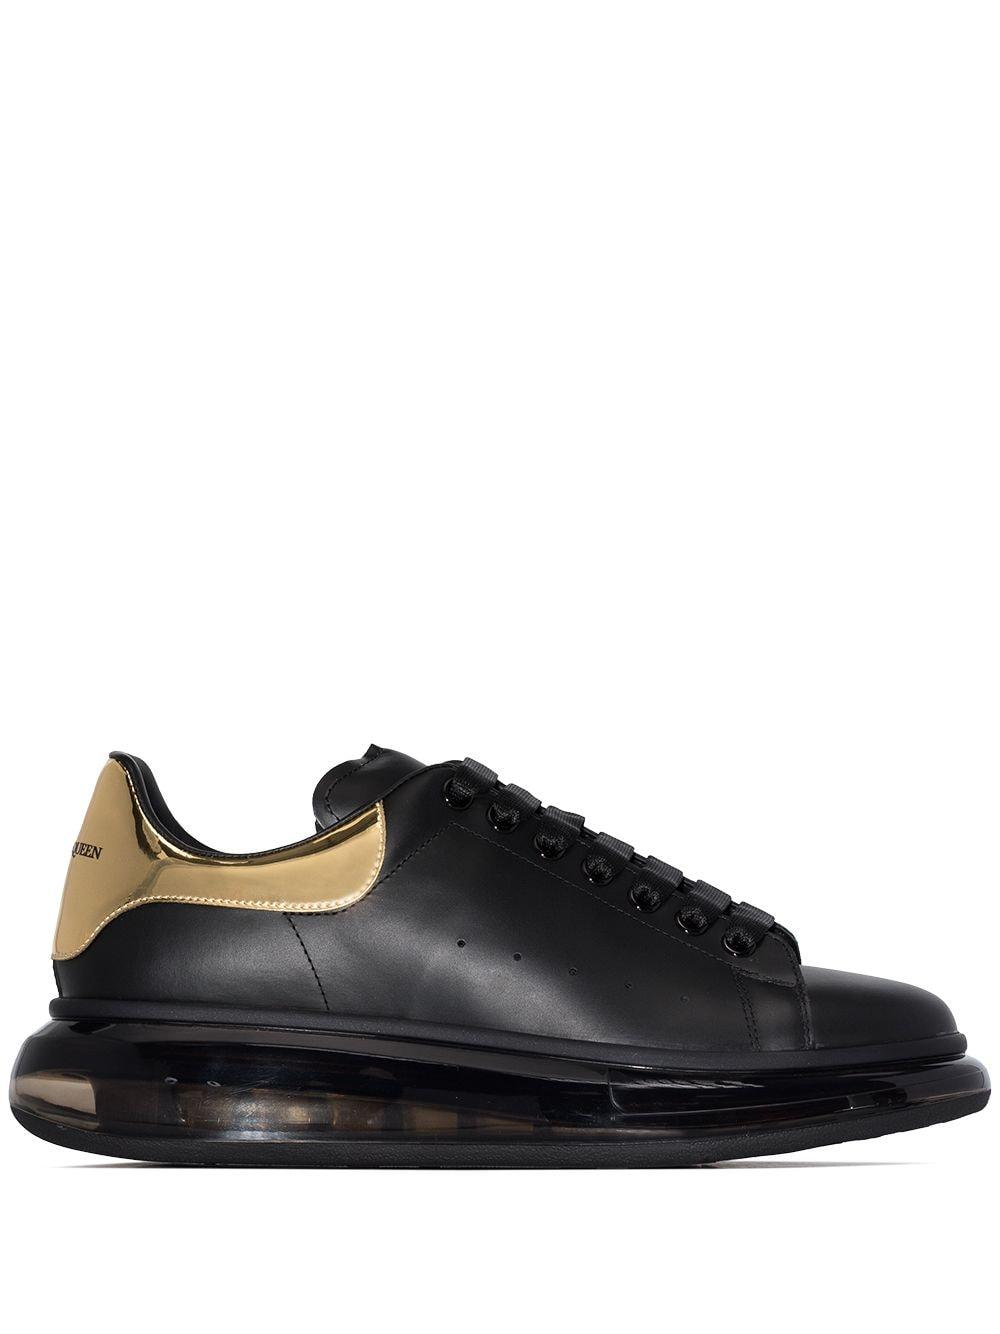 Alexander McQueen Sneakers Black/gold for Men | Lyst